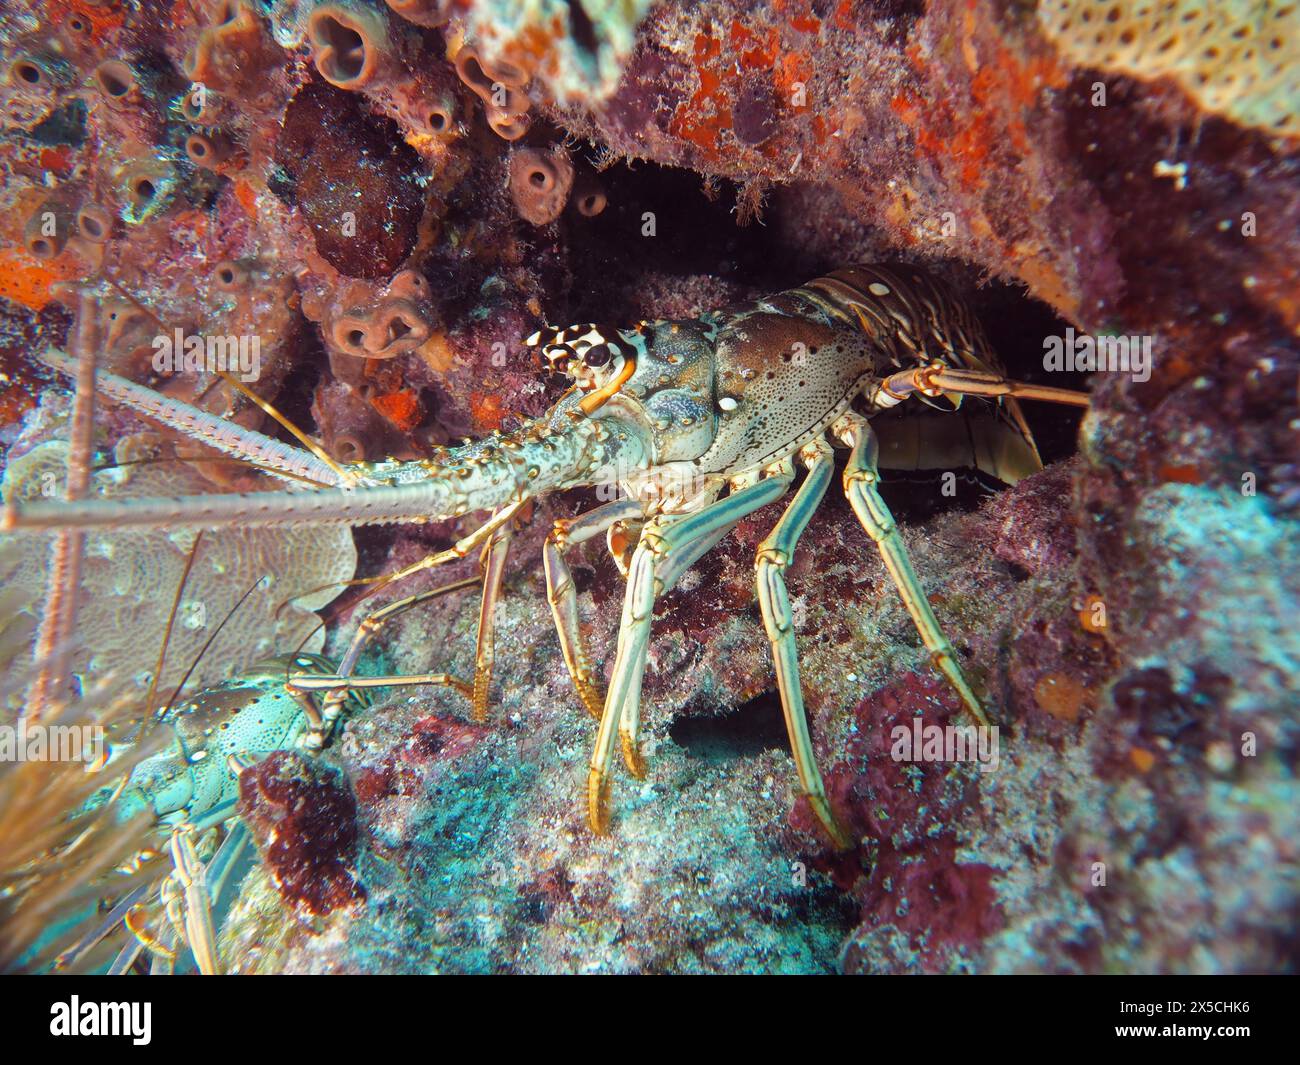 Ein karibischer Flusskrebse (Panulirus argus) versteckt sich in einer Höhle auf dem Meeresboden. Tauchplatz John Pennekamp Coral Reef State Park, Key Largo, Florida Keys Stockfoto